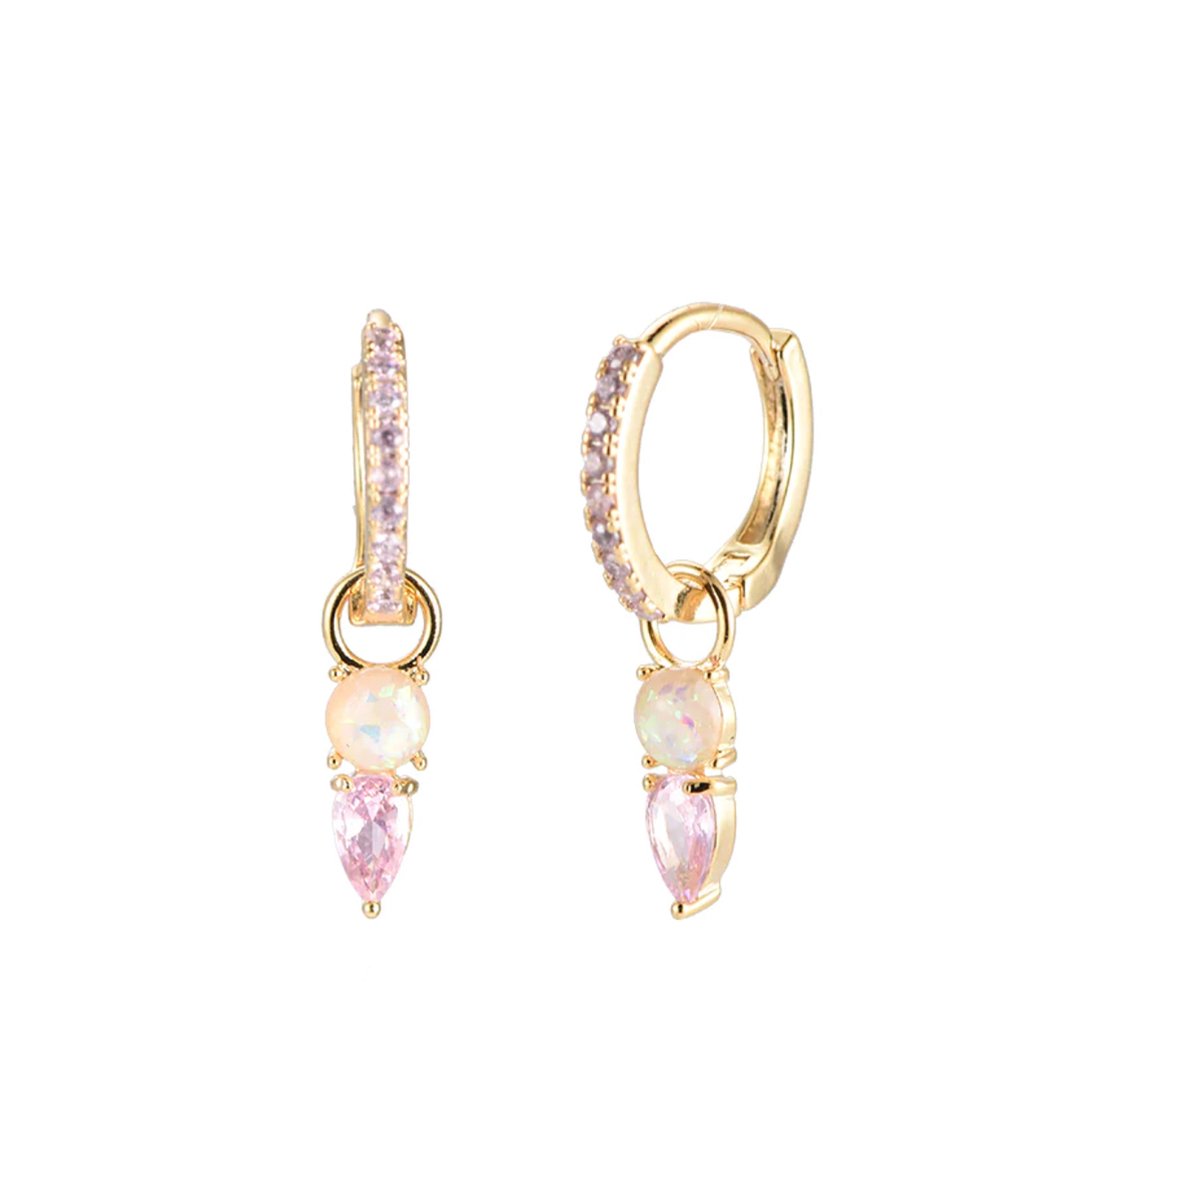 Pink pearl oorbellen - fanciy.nl - 18K - gold plated - nikkel vrij - waterproof - goud - gold - pink - roze - zirkonia - zirkoon - steentjes - earrings - ear party - earparty - parels - parel - pearl - pearls